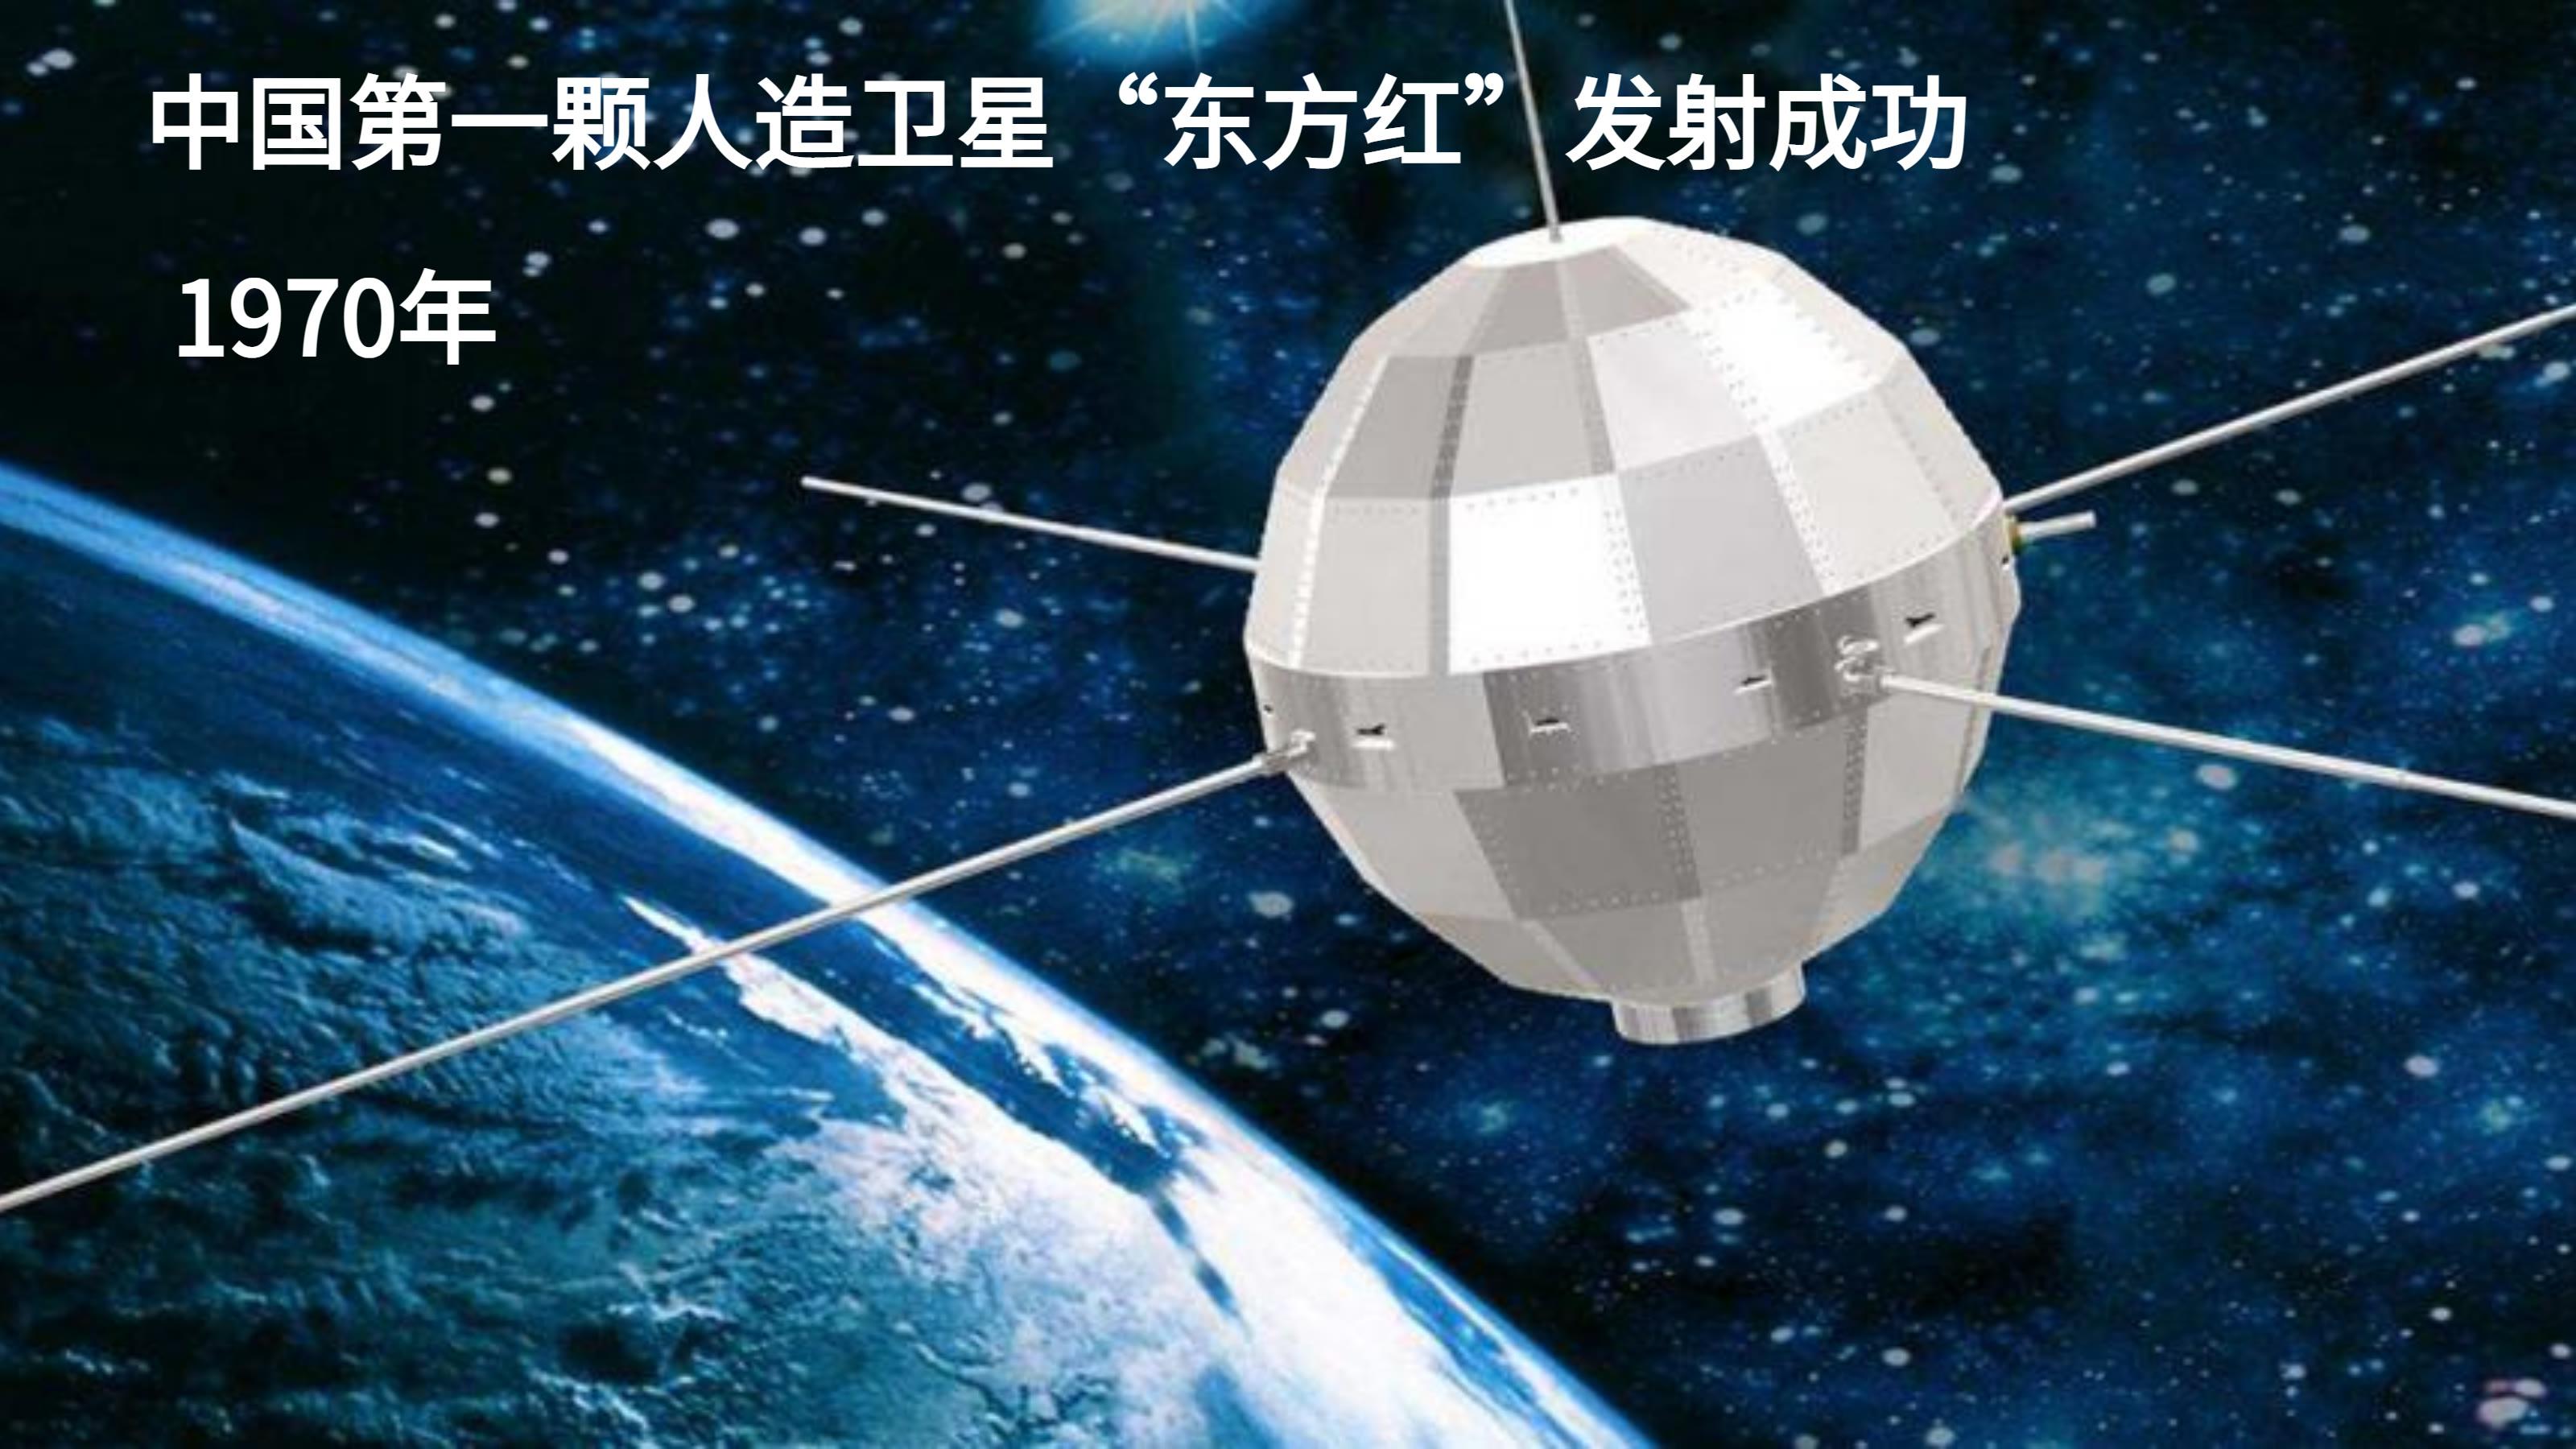 1970年,中国第一颗人造卫星东方红发射成功1973年,袁隆平培育出了第